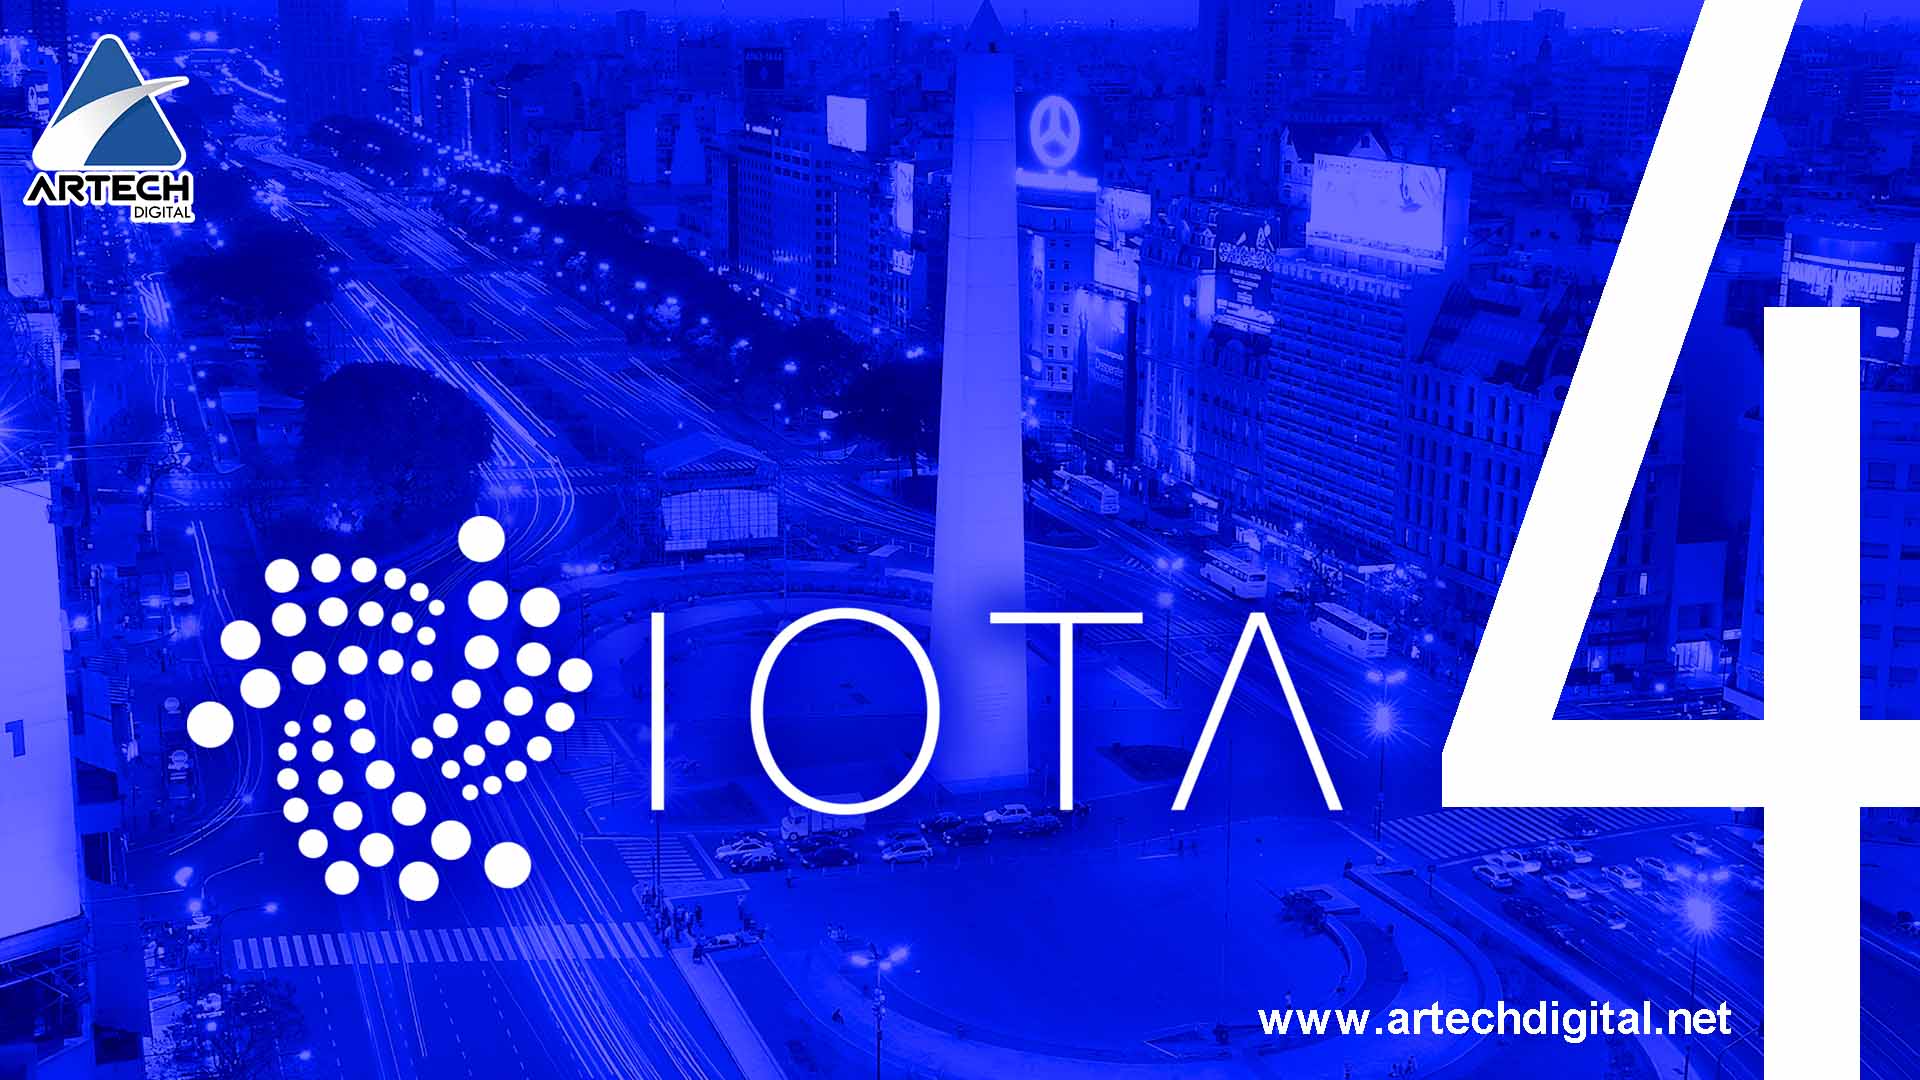 Cuarta edición IOTA - Artech Digital